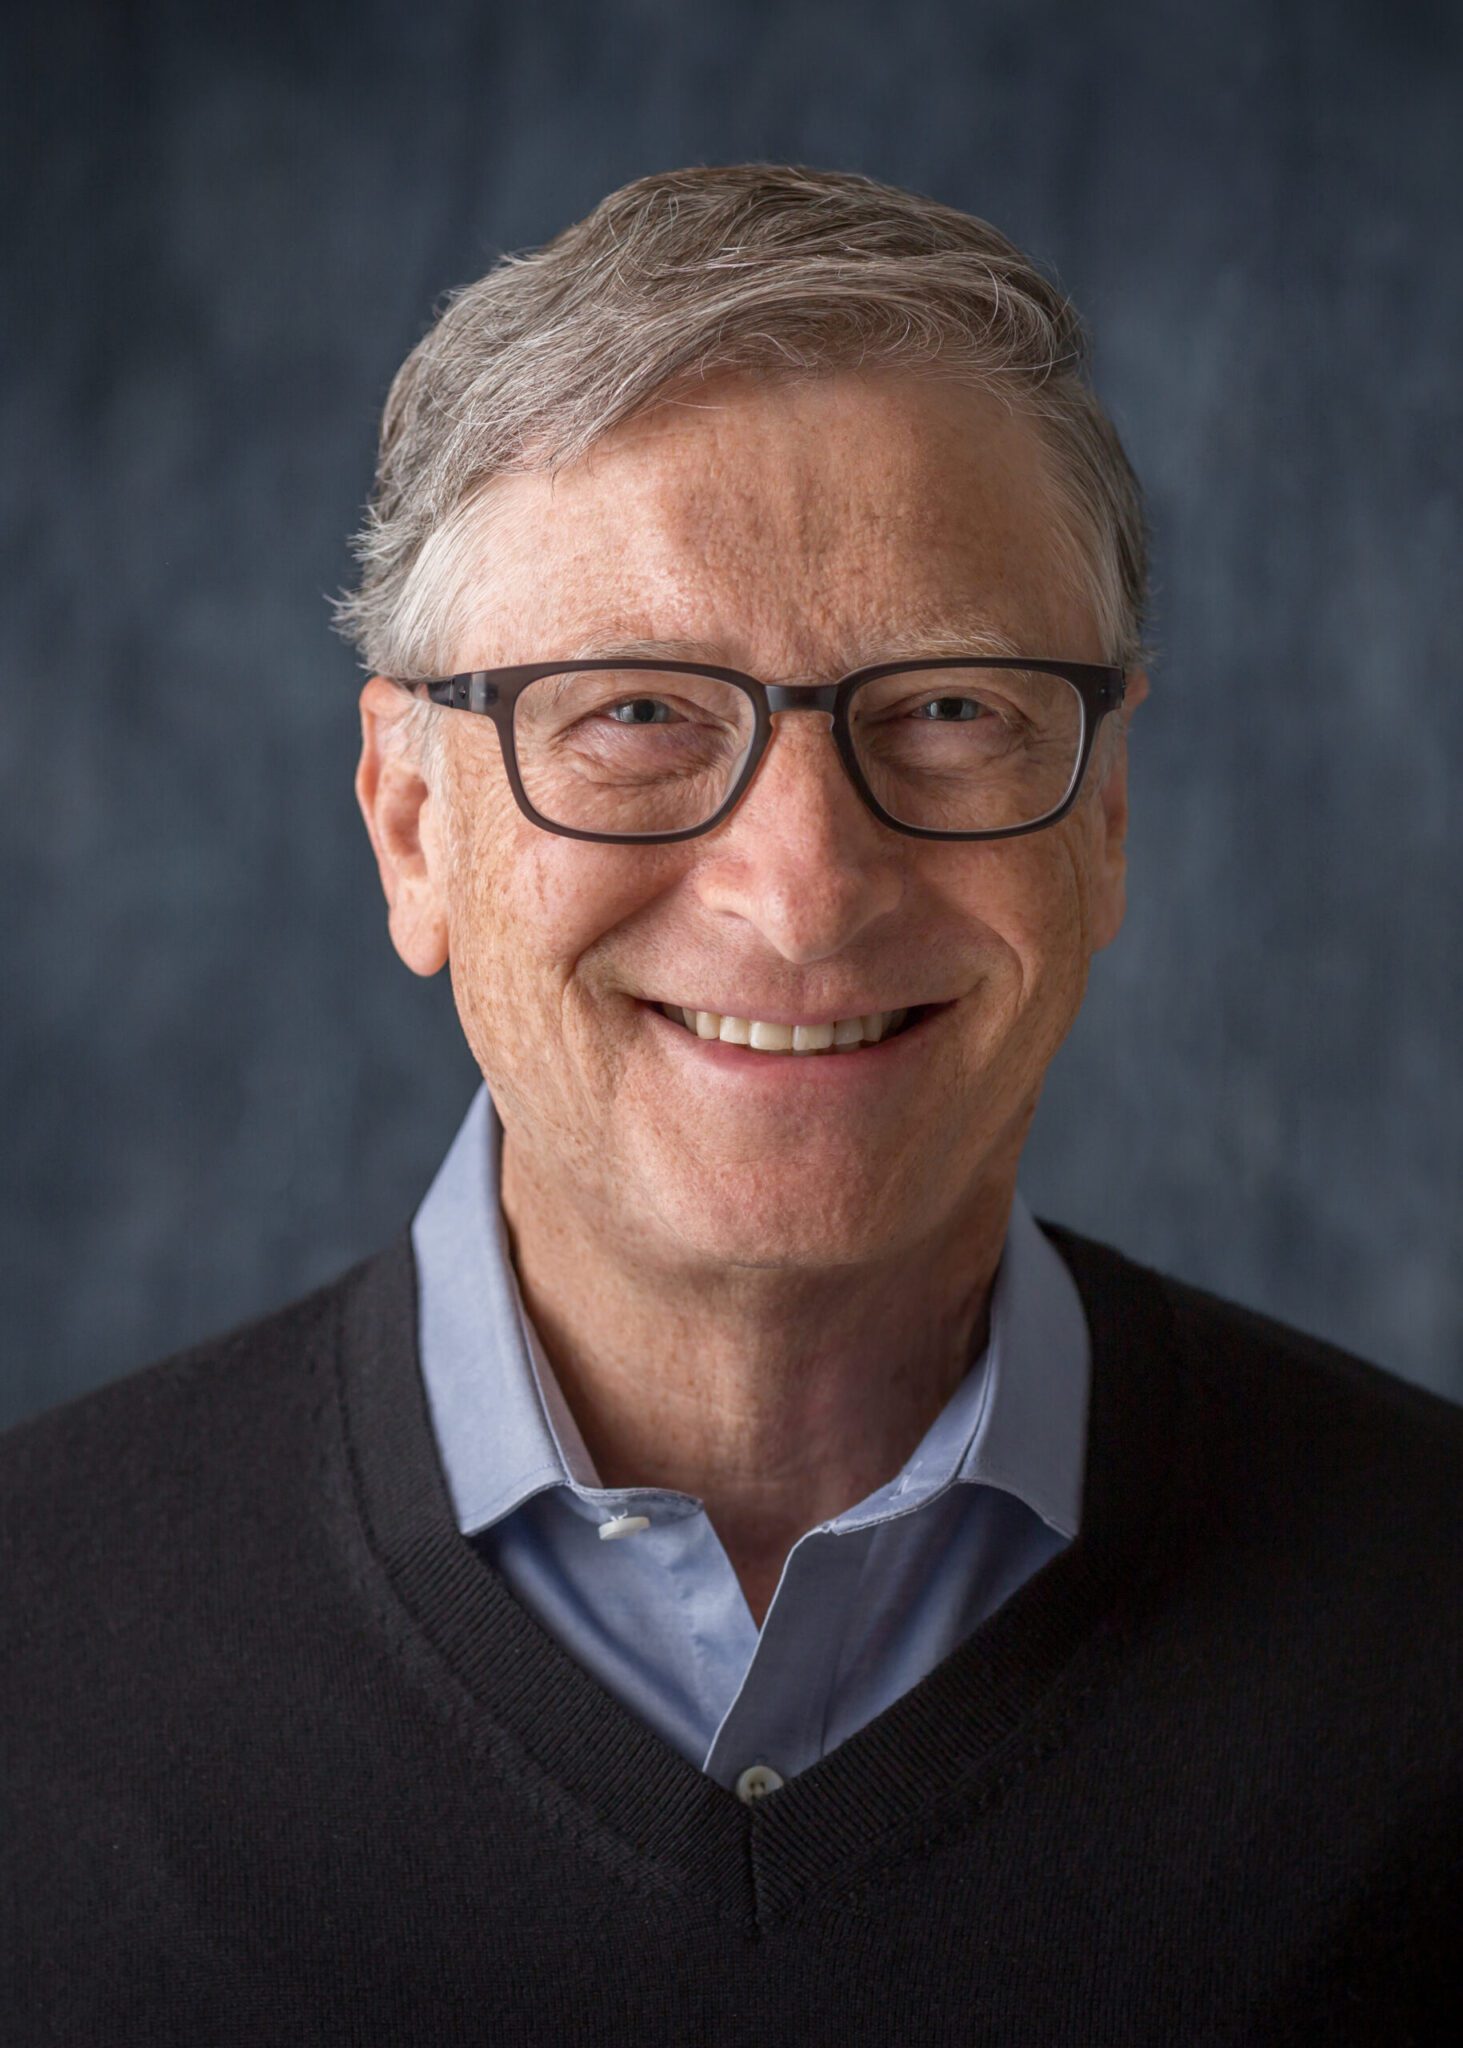 Bill Gates headshot